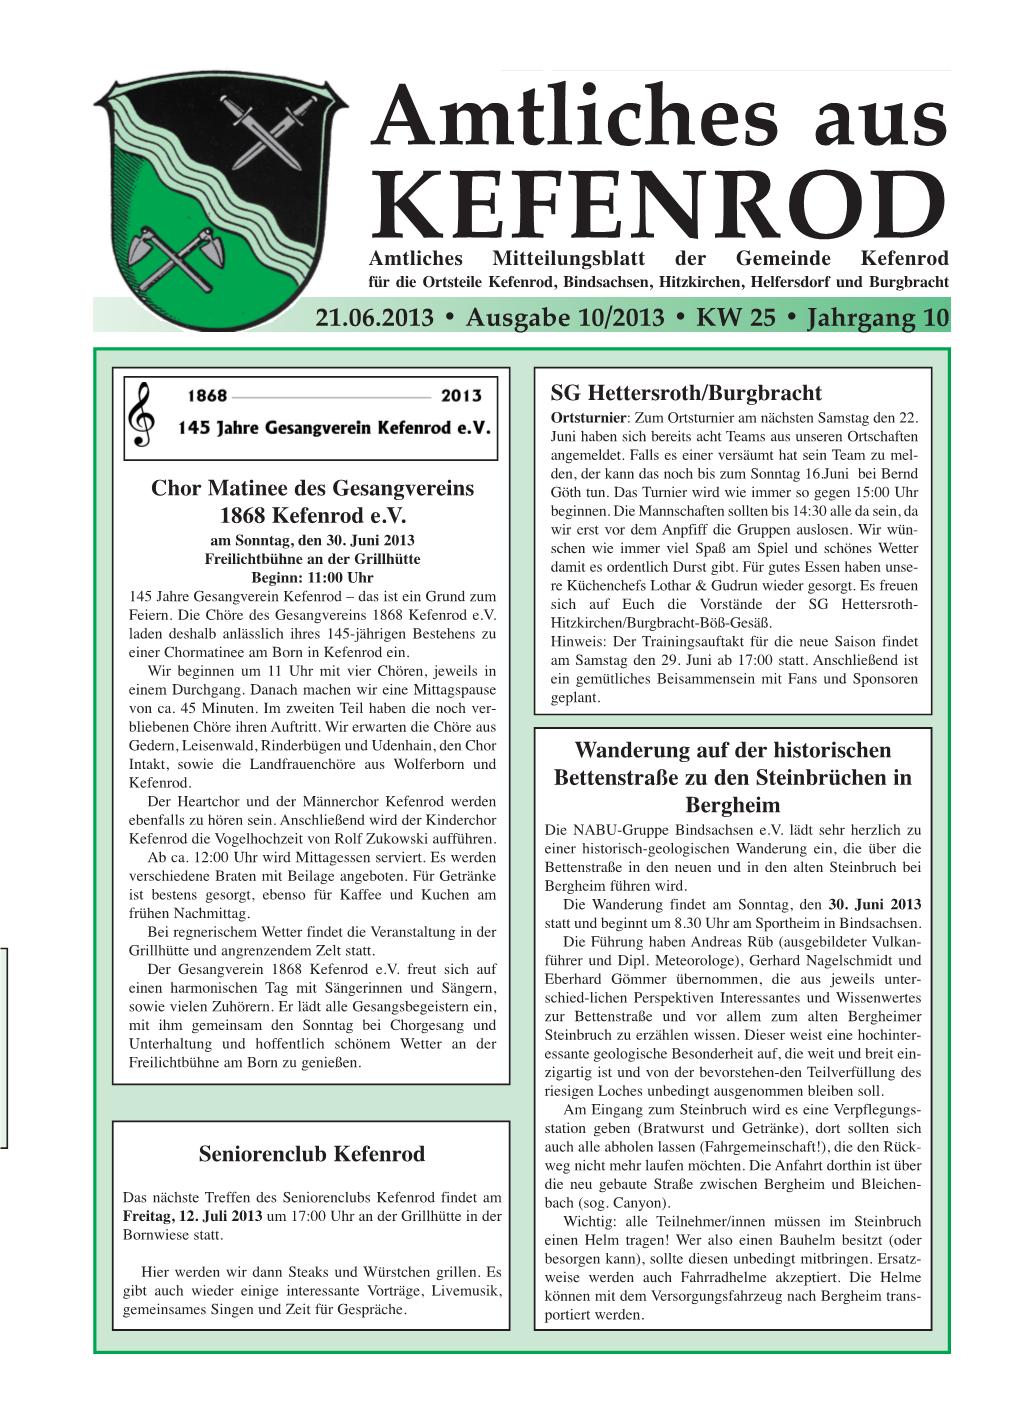 Kefenrod Kfür Die Ortesteile Keffenrod, Beindsachsnen, Hitzkircrhen, Helfeorsdorf Und Dburgbracht 21.06.2013 • Ausgabe 10/2013 • KW 25 • Jahrgang 10